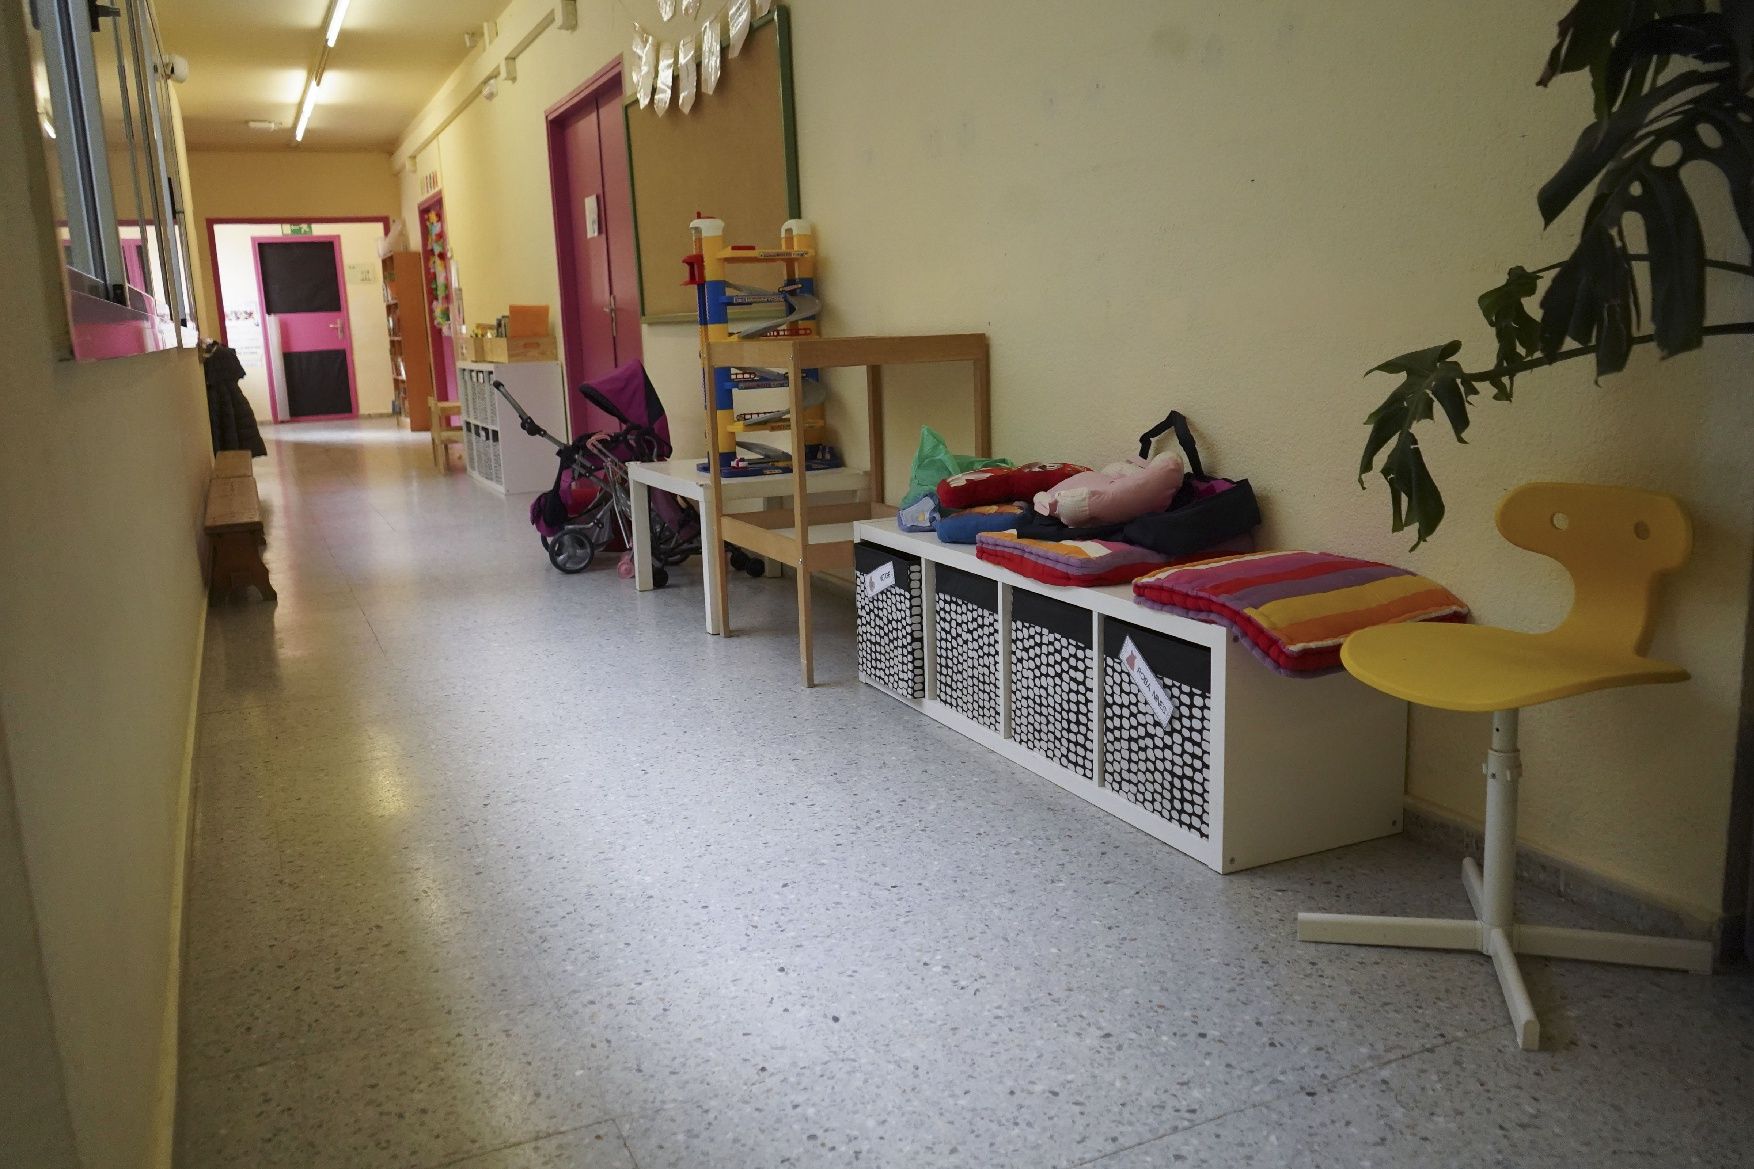 Prova de sirenes per risc químic de Protecció Civil a l'Escola Sant Vicenç de Castellet